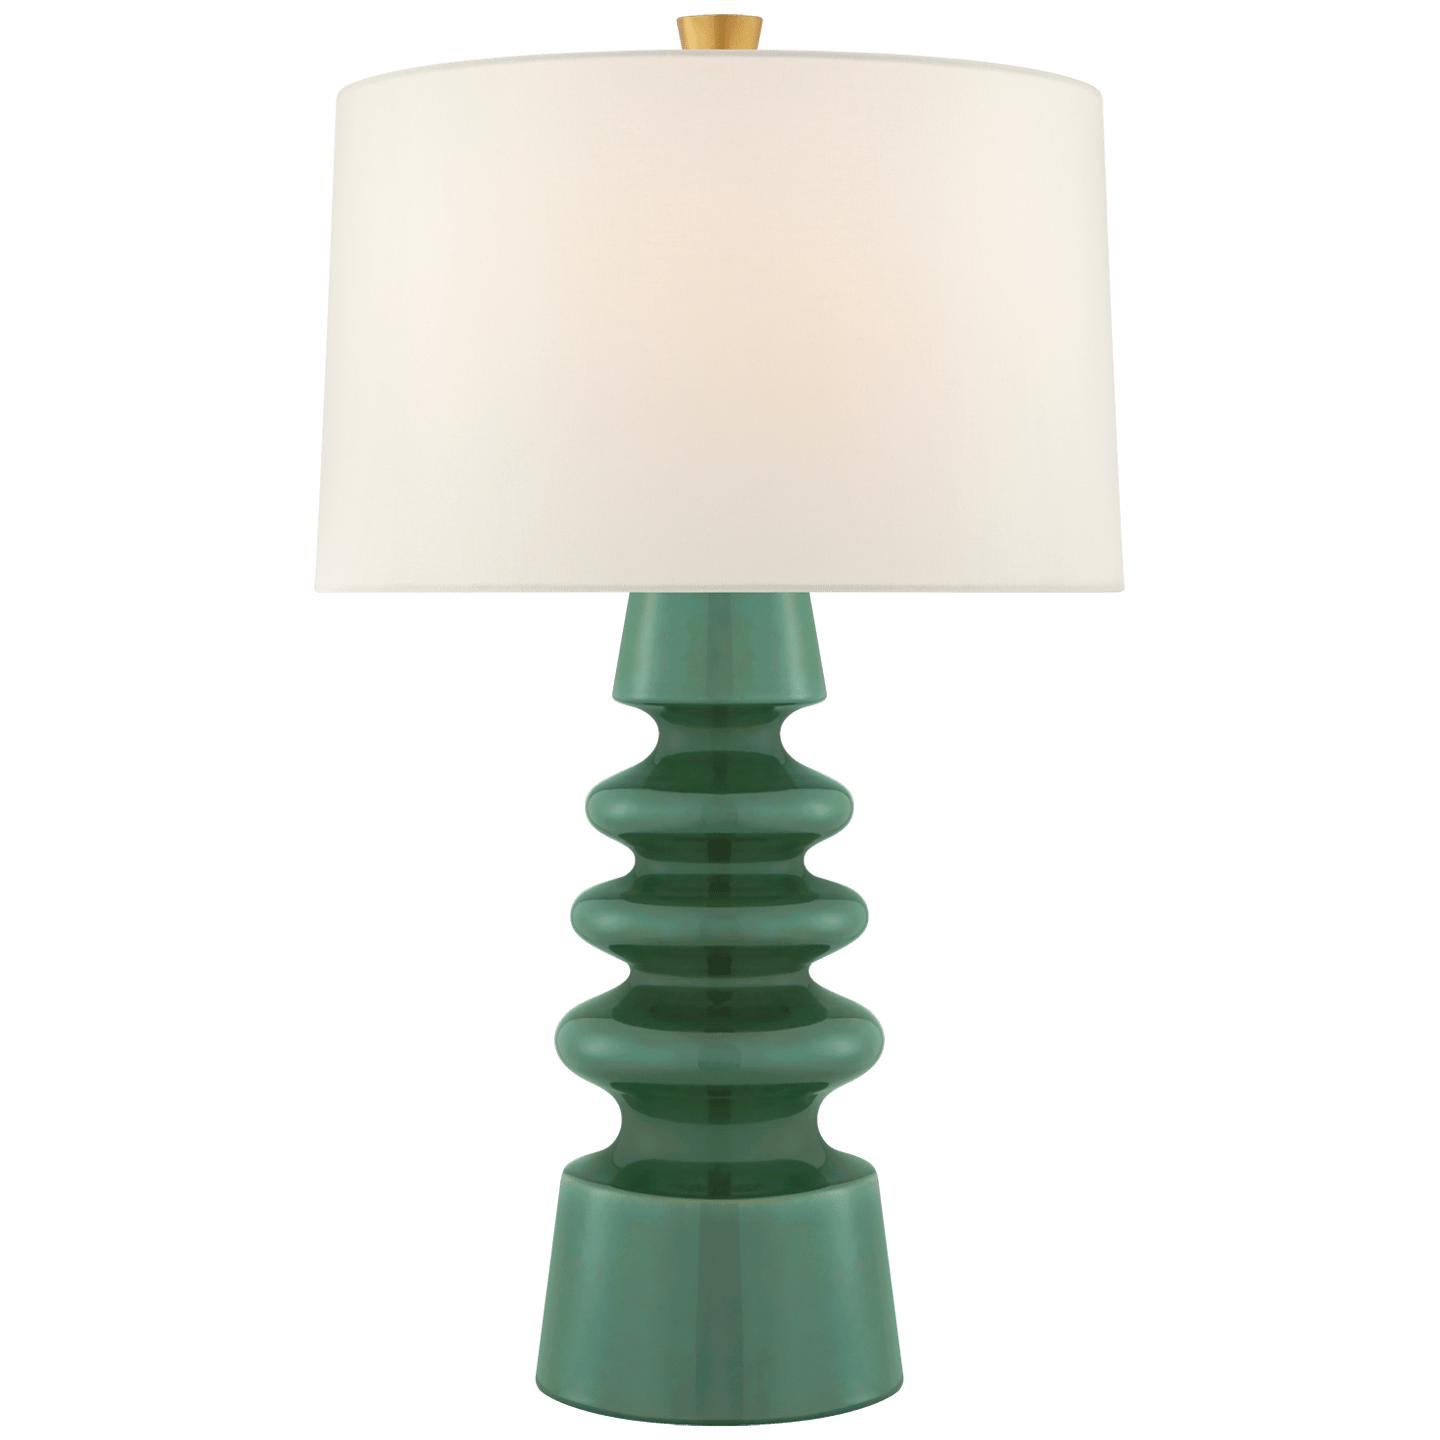 Купить Настольная лампа Andreas Medium Table Lamp в интернет-магазине roooms.ru